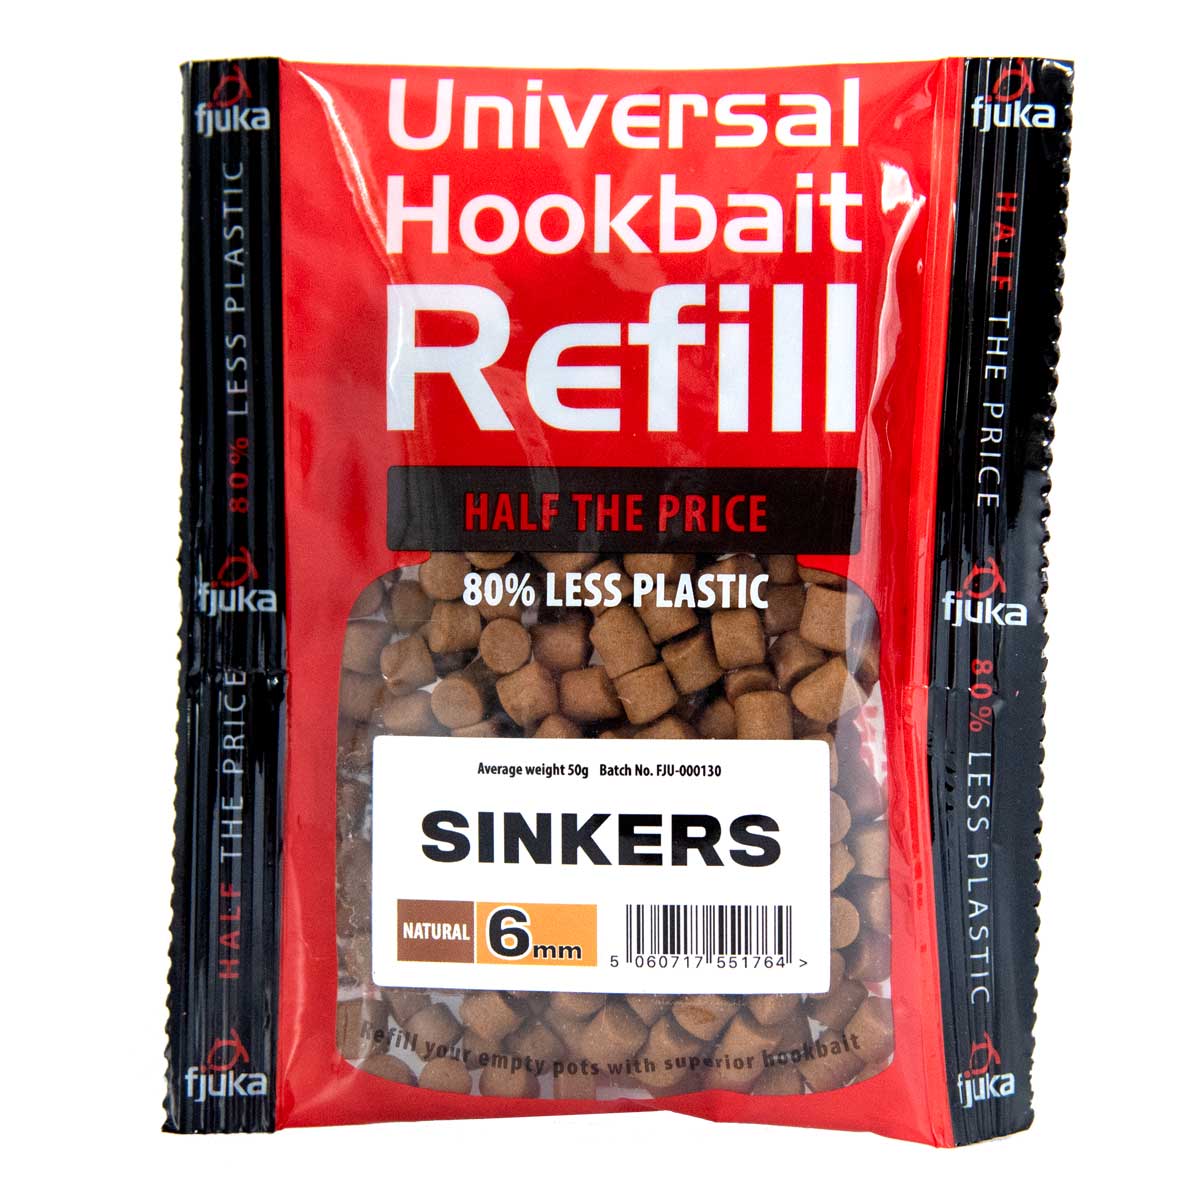 
                  
                    Sinkers - Refill
                  
                